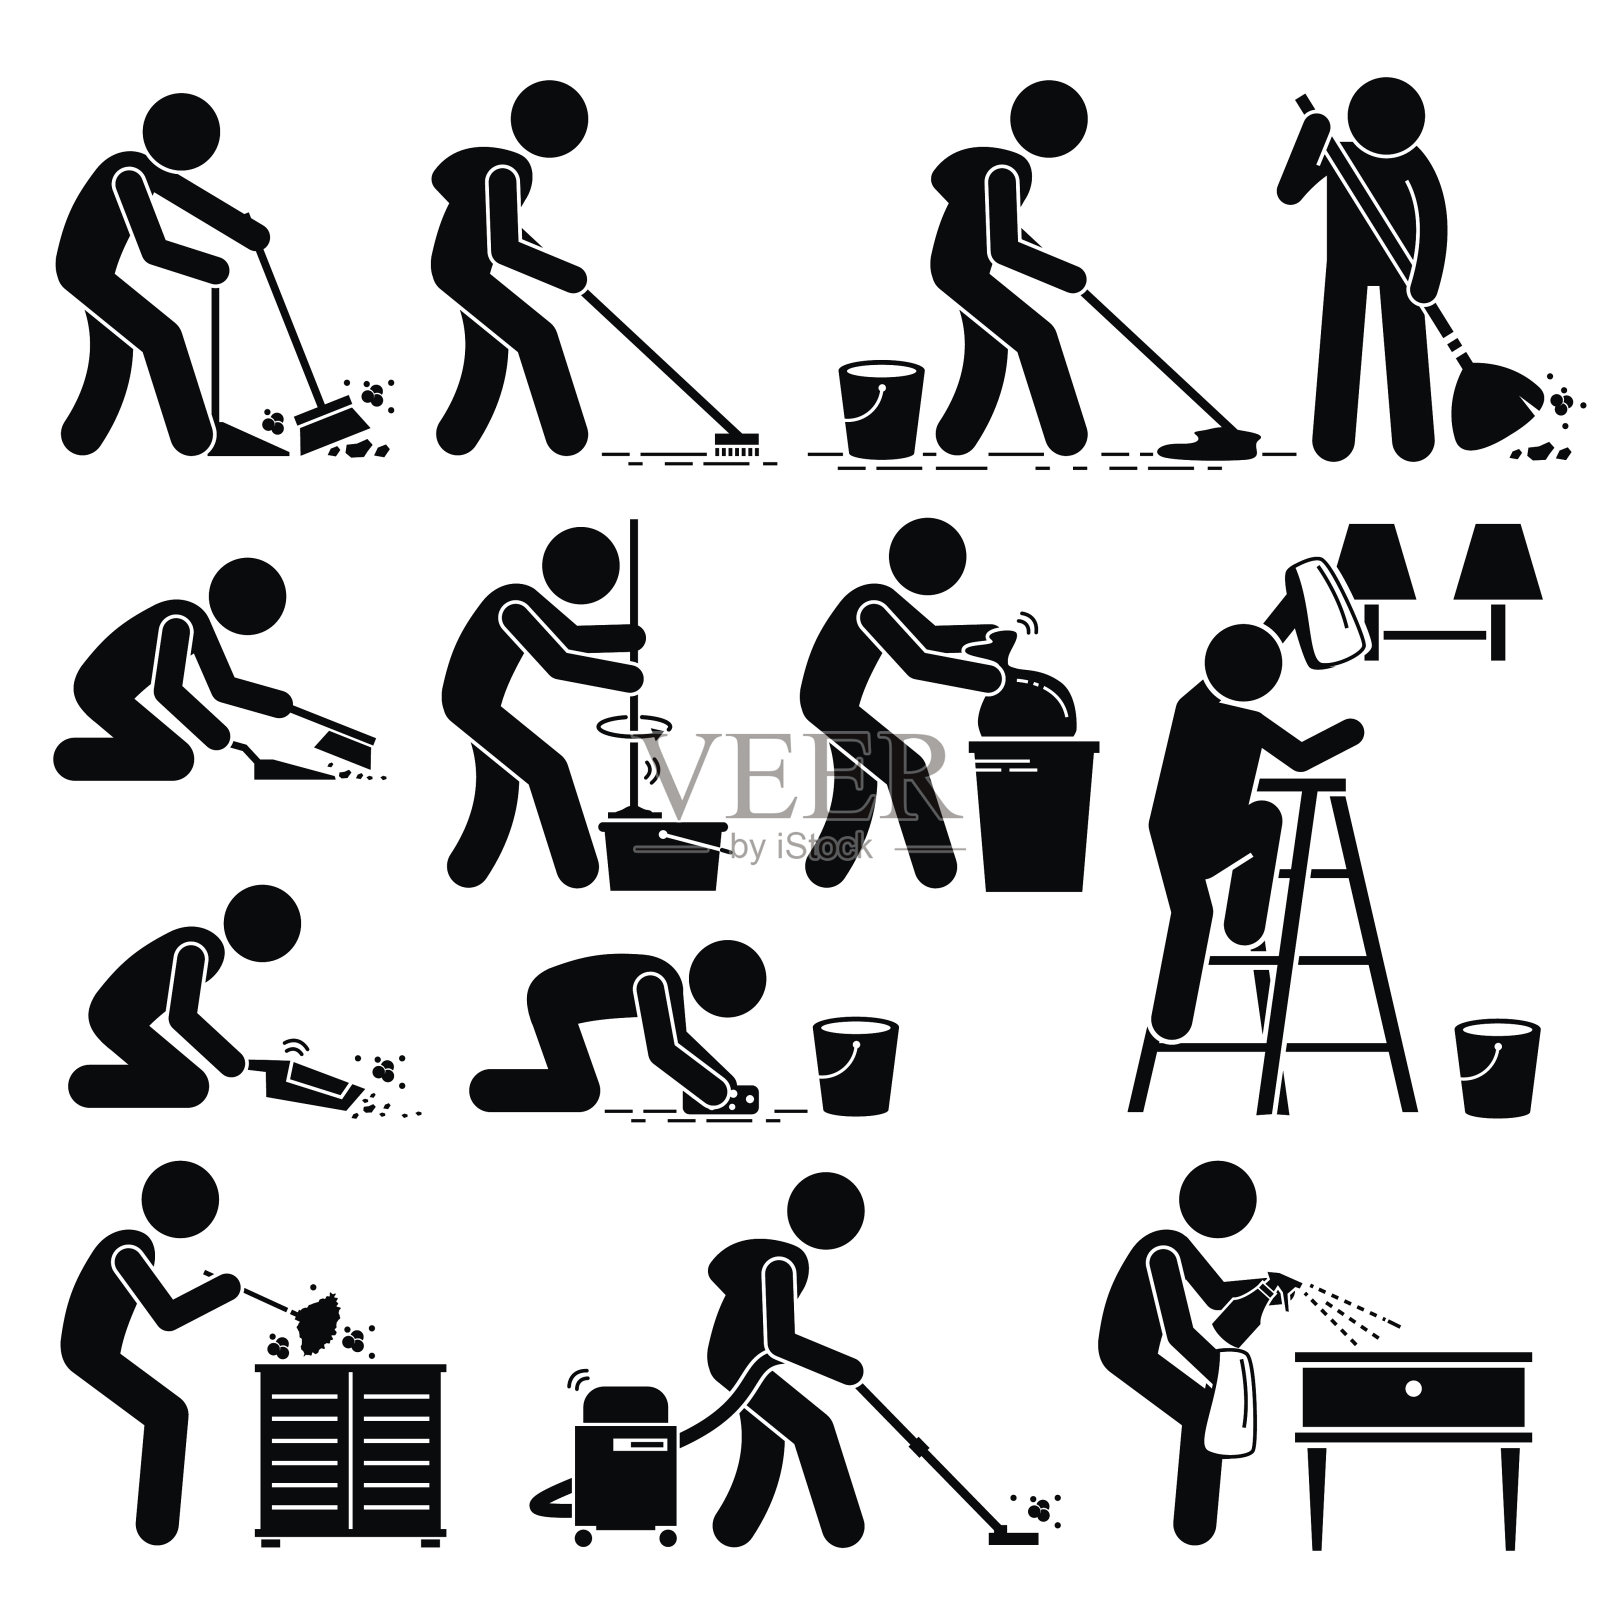 清洁工清洁和清洗房子的象形文字插画图片素材